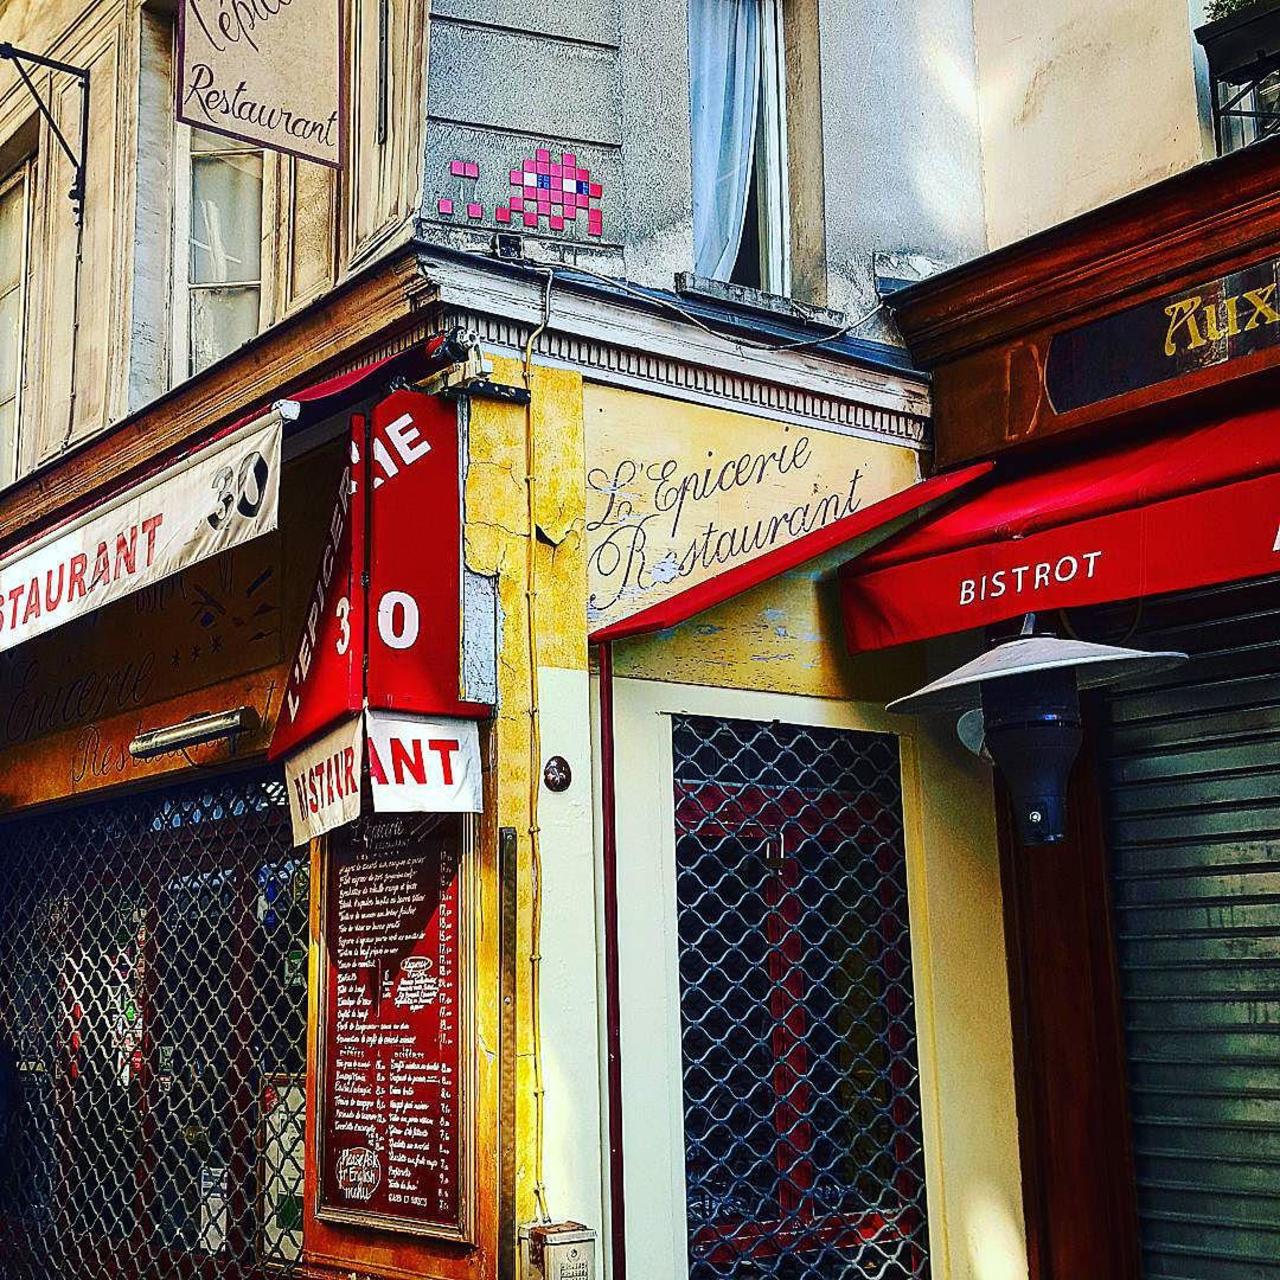 #Paris #graffiti photo by @beabookingstories http://ift.tt/1LVxwfH #StreetArt http://t.co/wS8fDRivWY